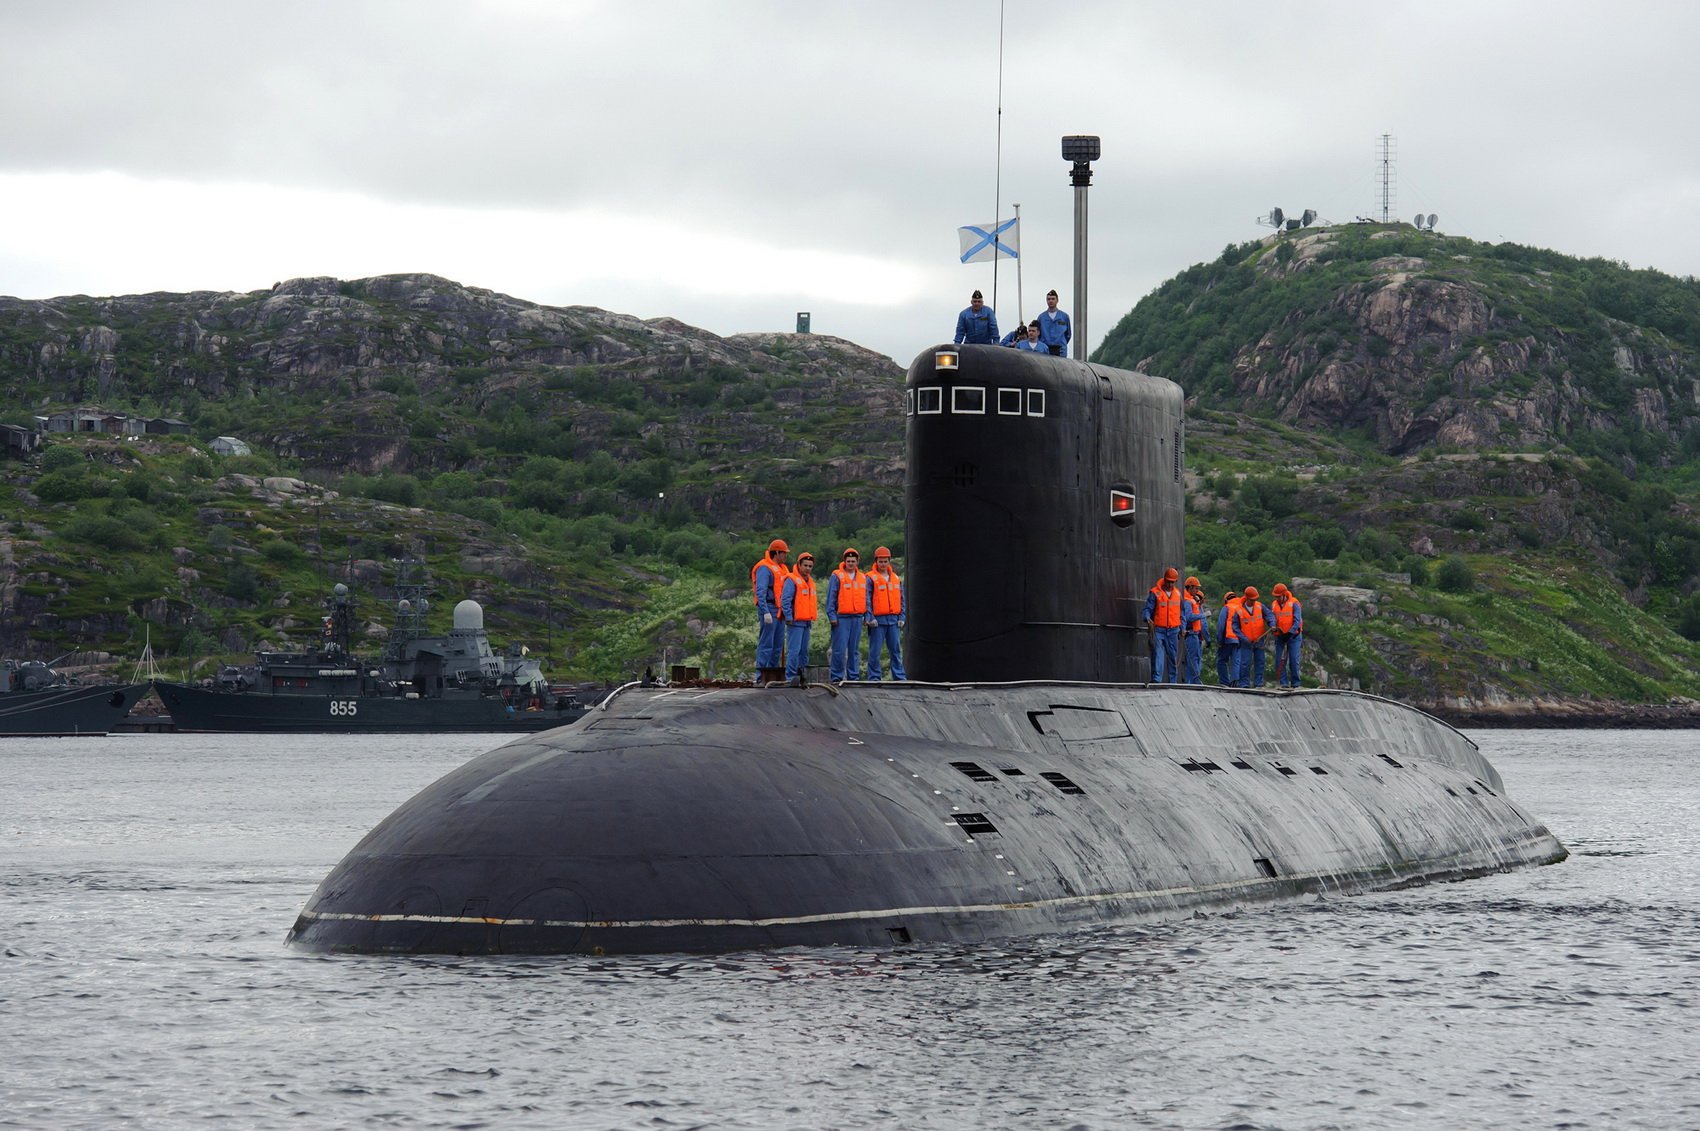 Пл ев. 667 БДРМ Карелия. Подводные лодки проекта 667бдрм «Дельфин». Подводная лодка Северного флота «с-56». 161 Бригада подводных лодок Северного флота.